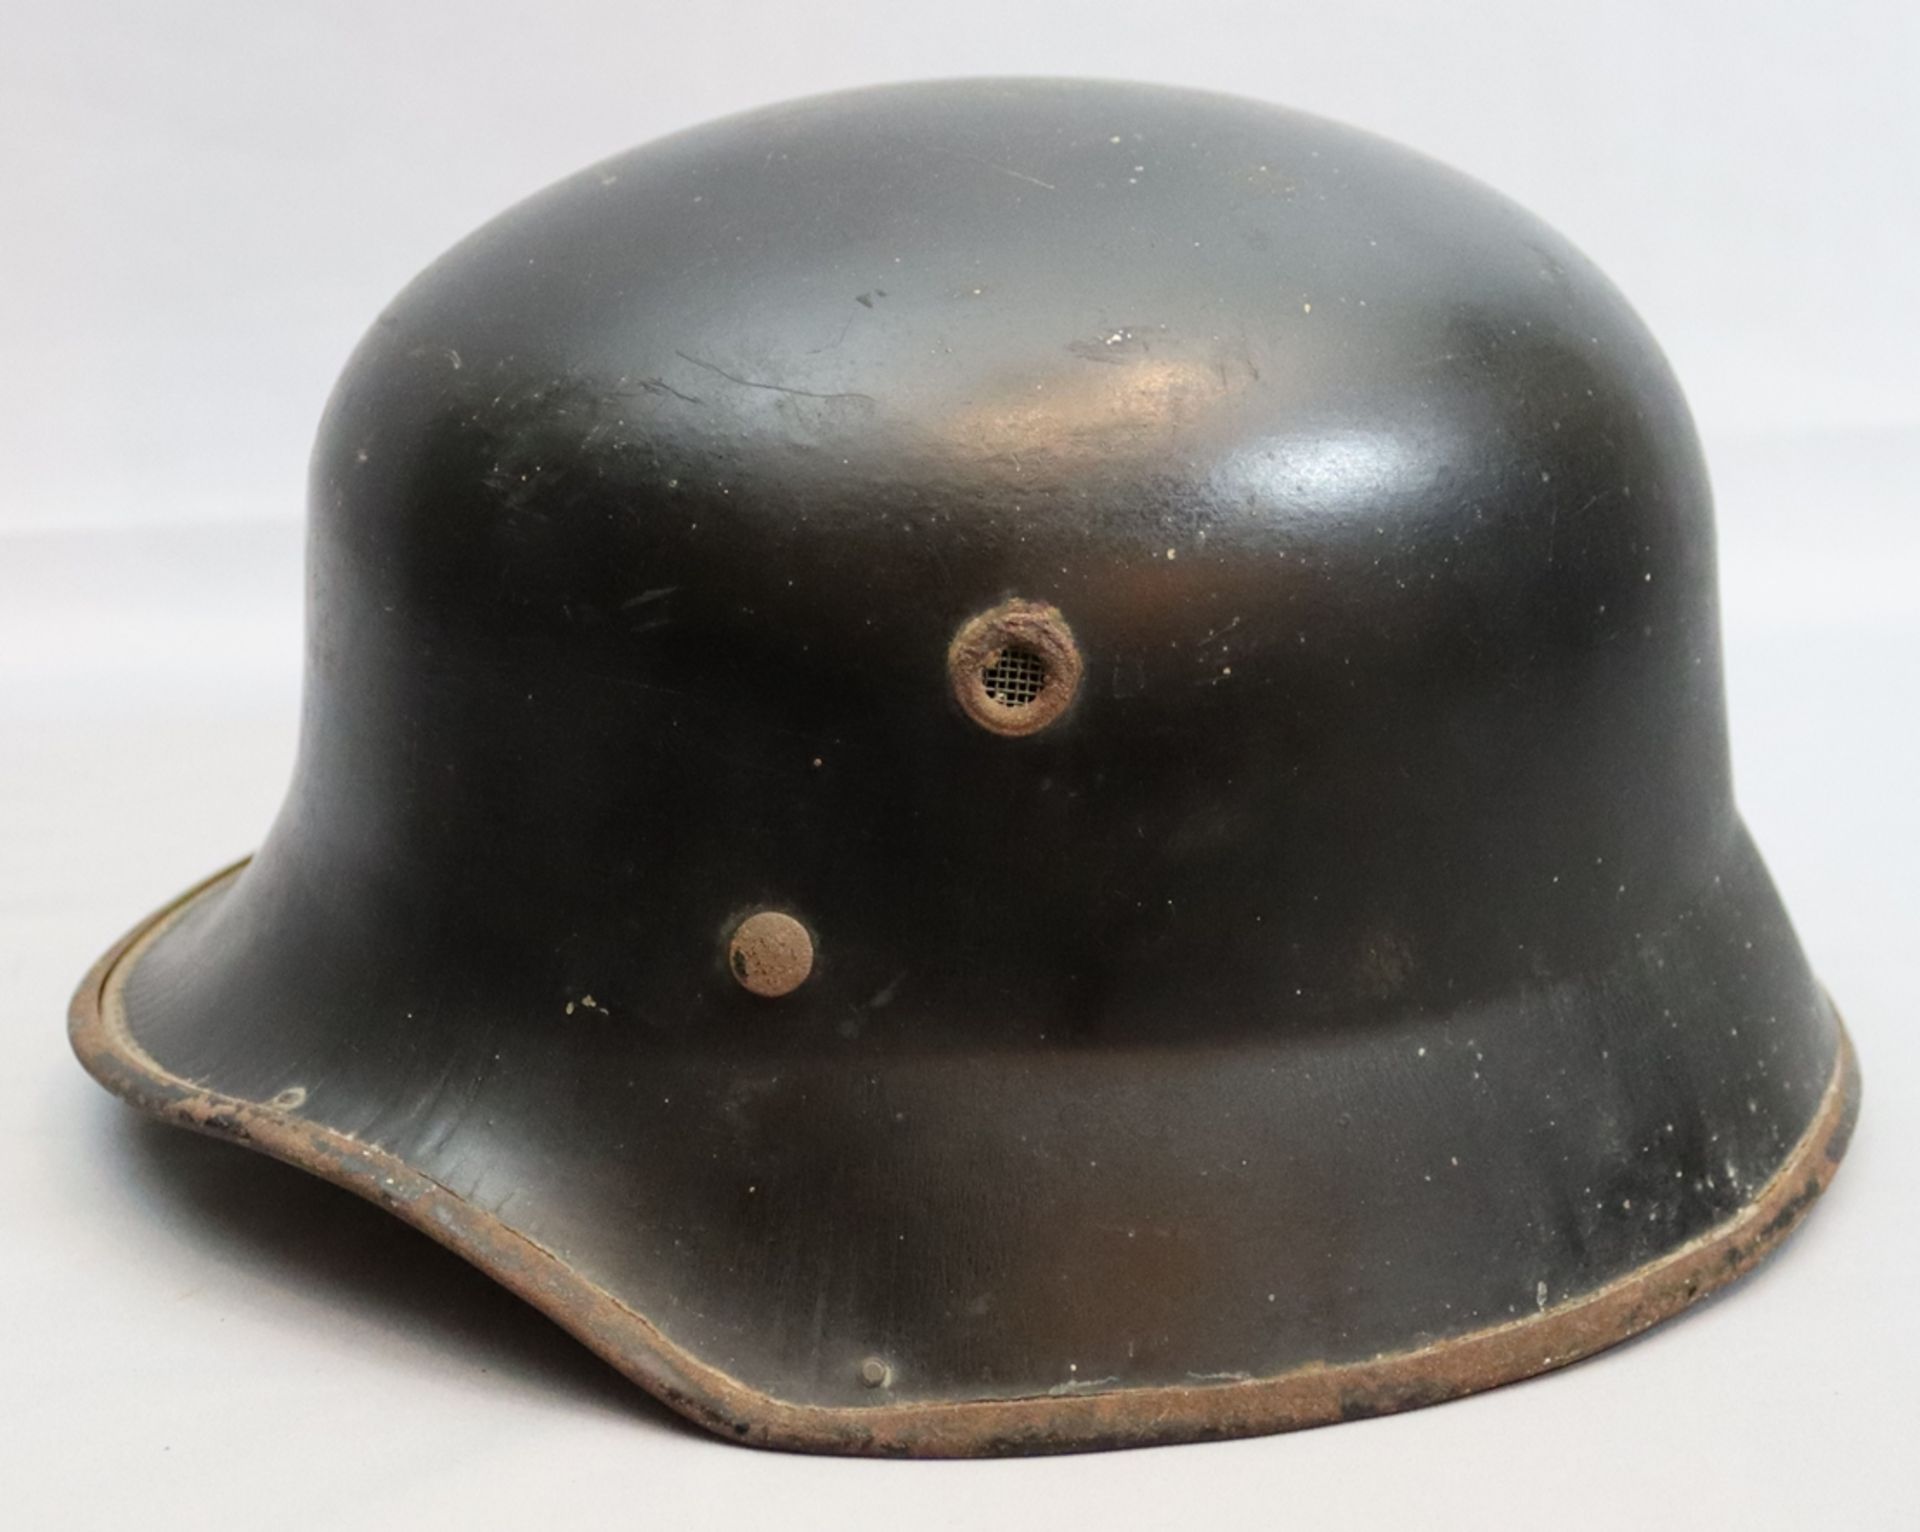 German fire helmet 1940 - 1950, German Reich - Image 2 of 3